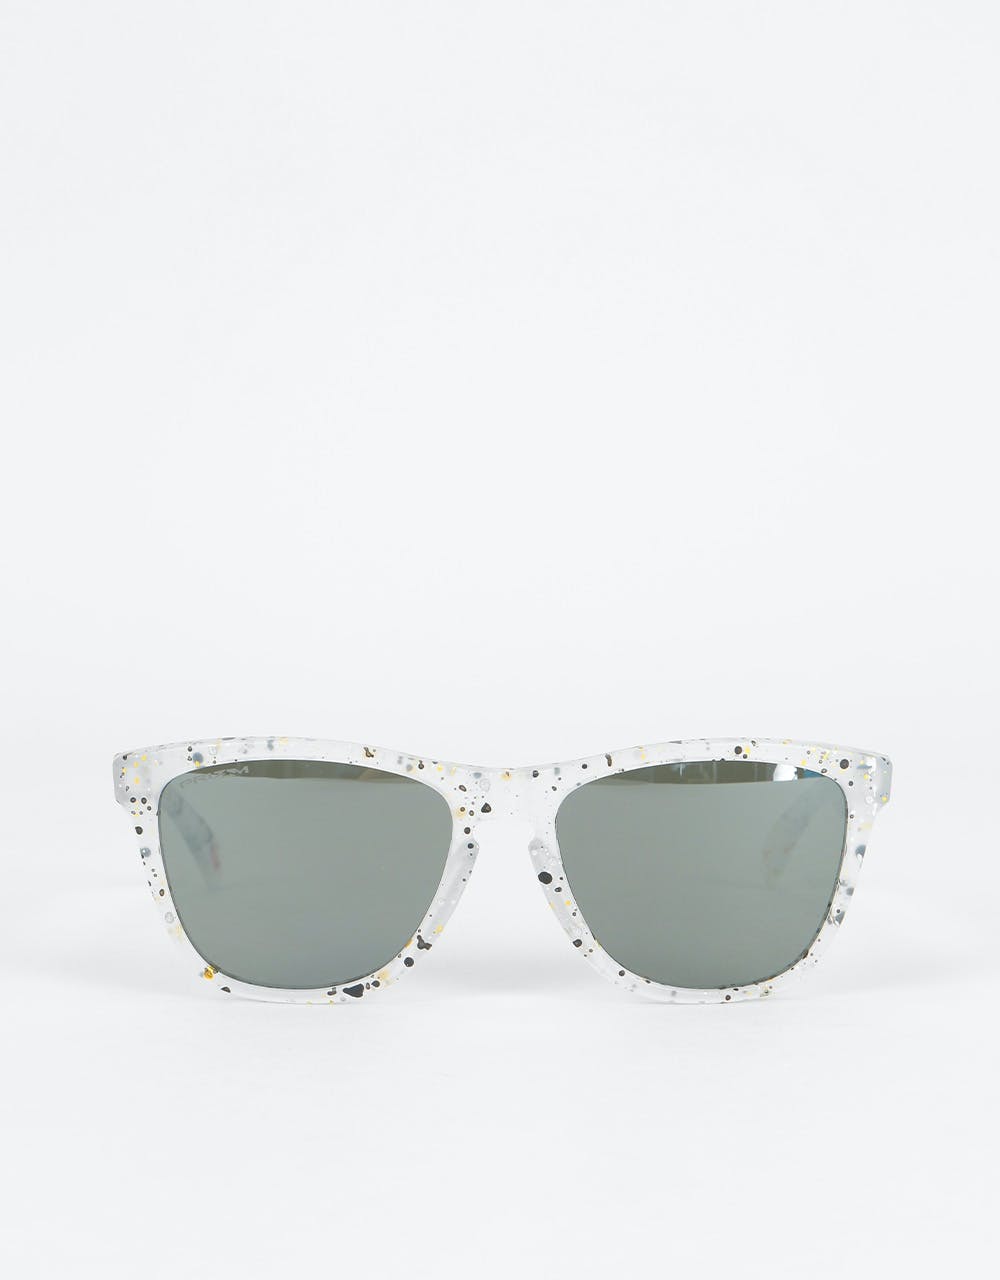 Oakley Frogskins Sunglasses - Splatter Clear (Prizm Black Lens)